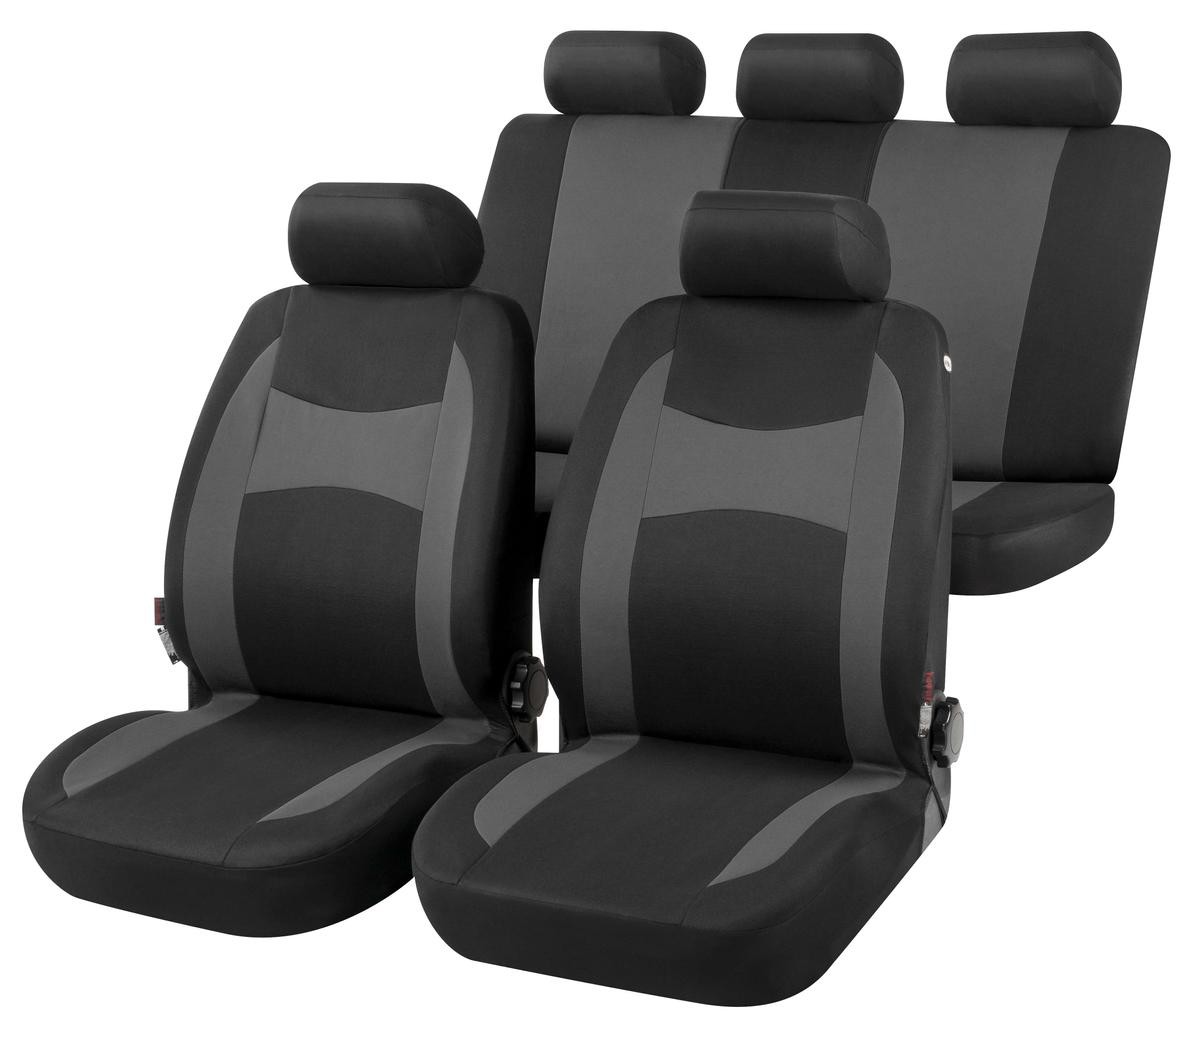 Sitzbezüge für Nissan Murano günstig bestellen